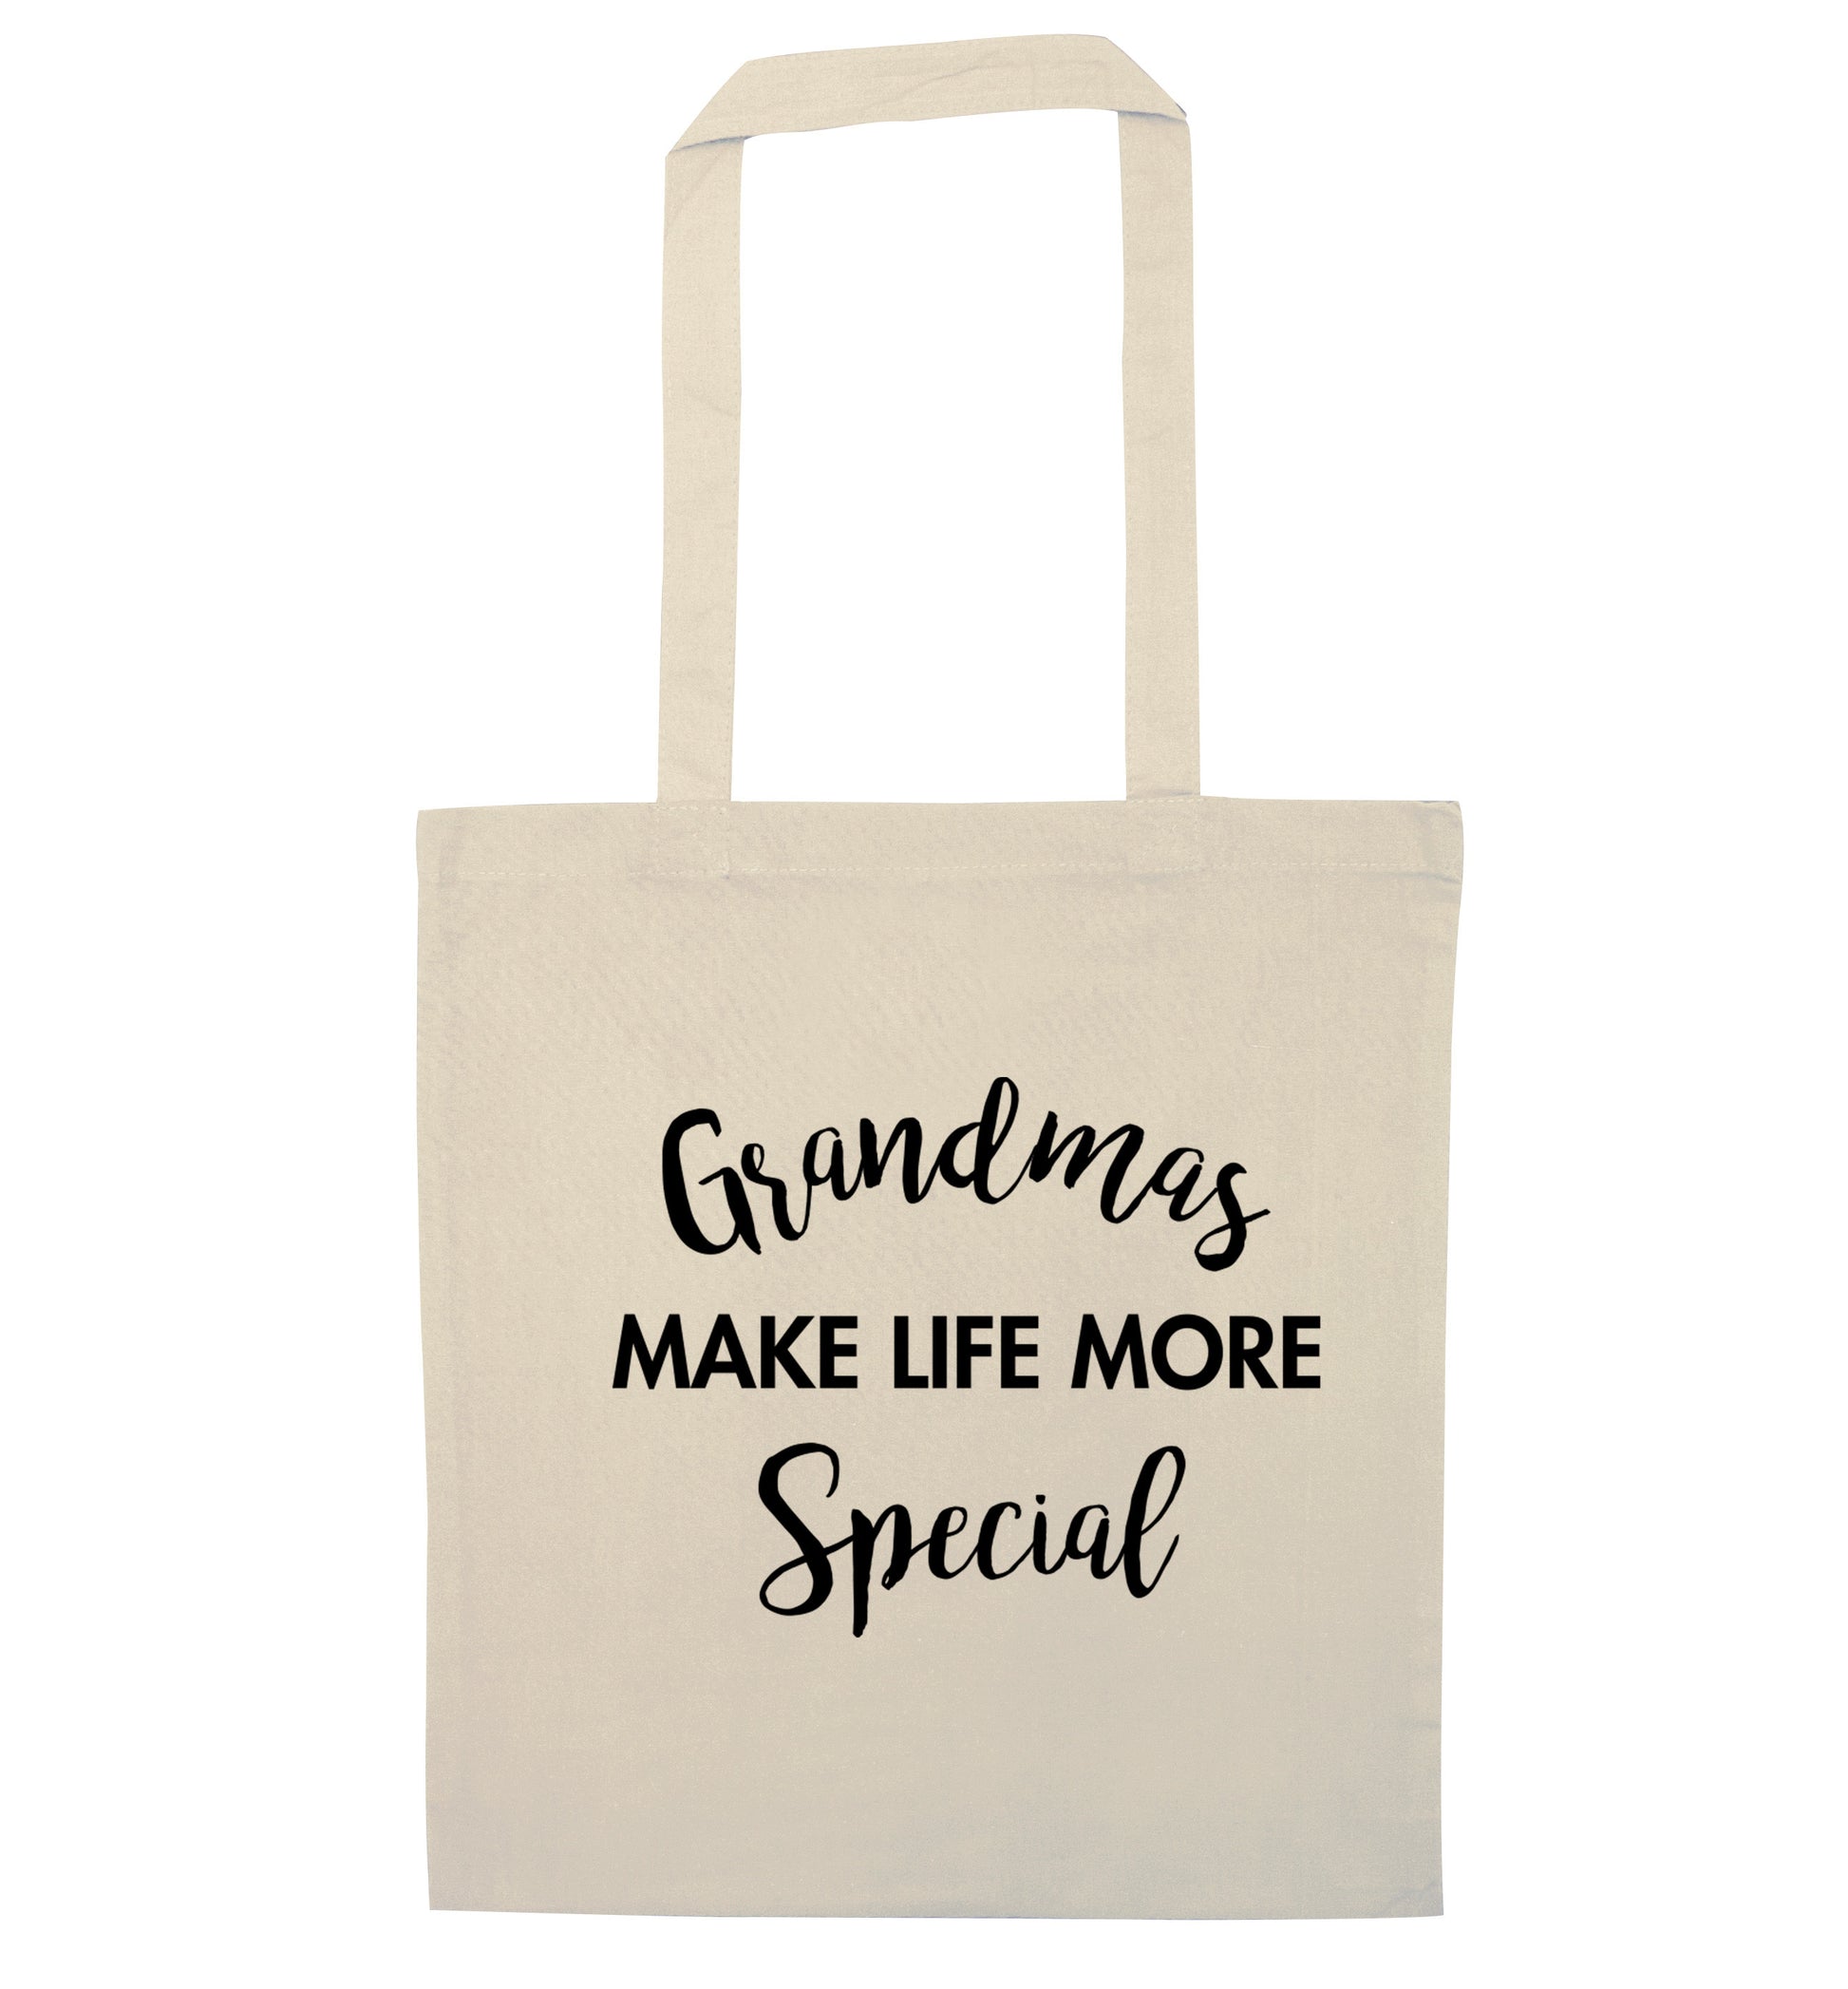 Grandmas make life more special natural tote bag